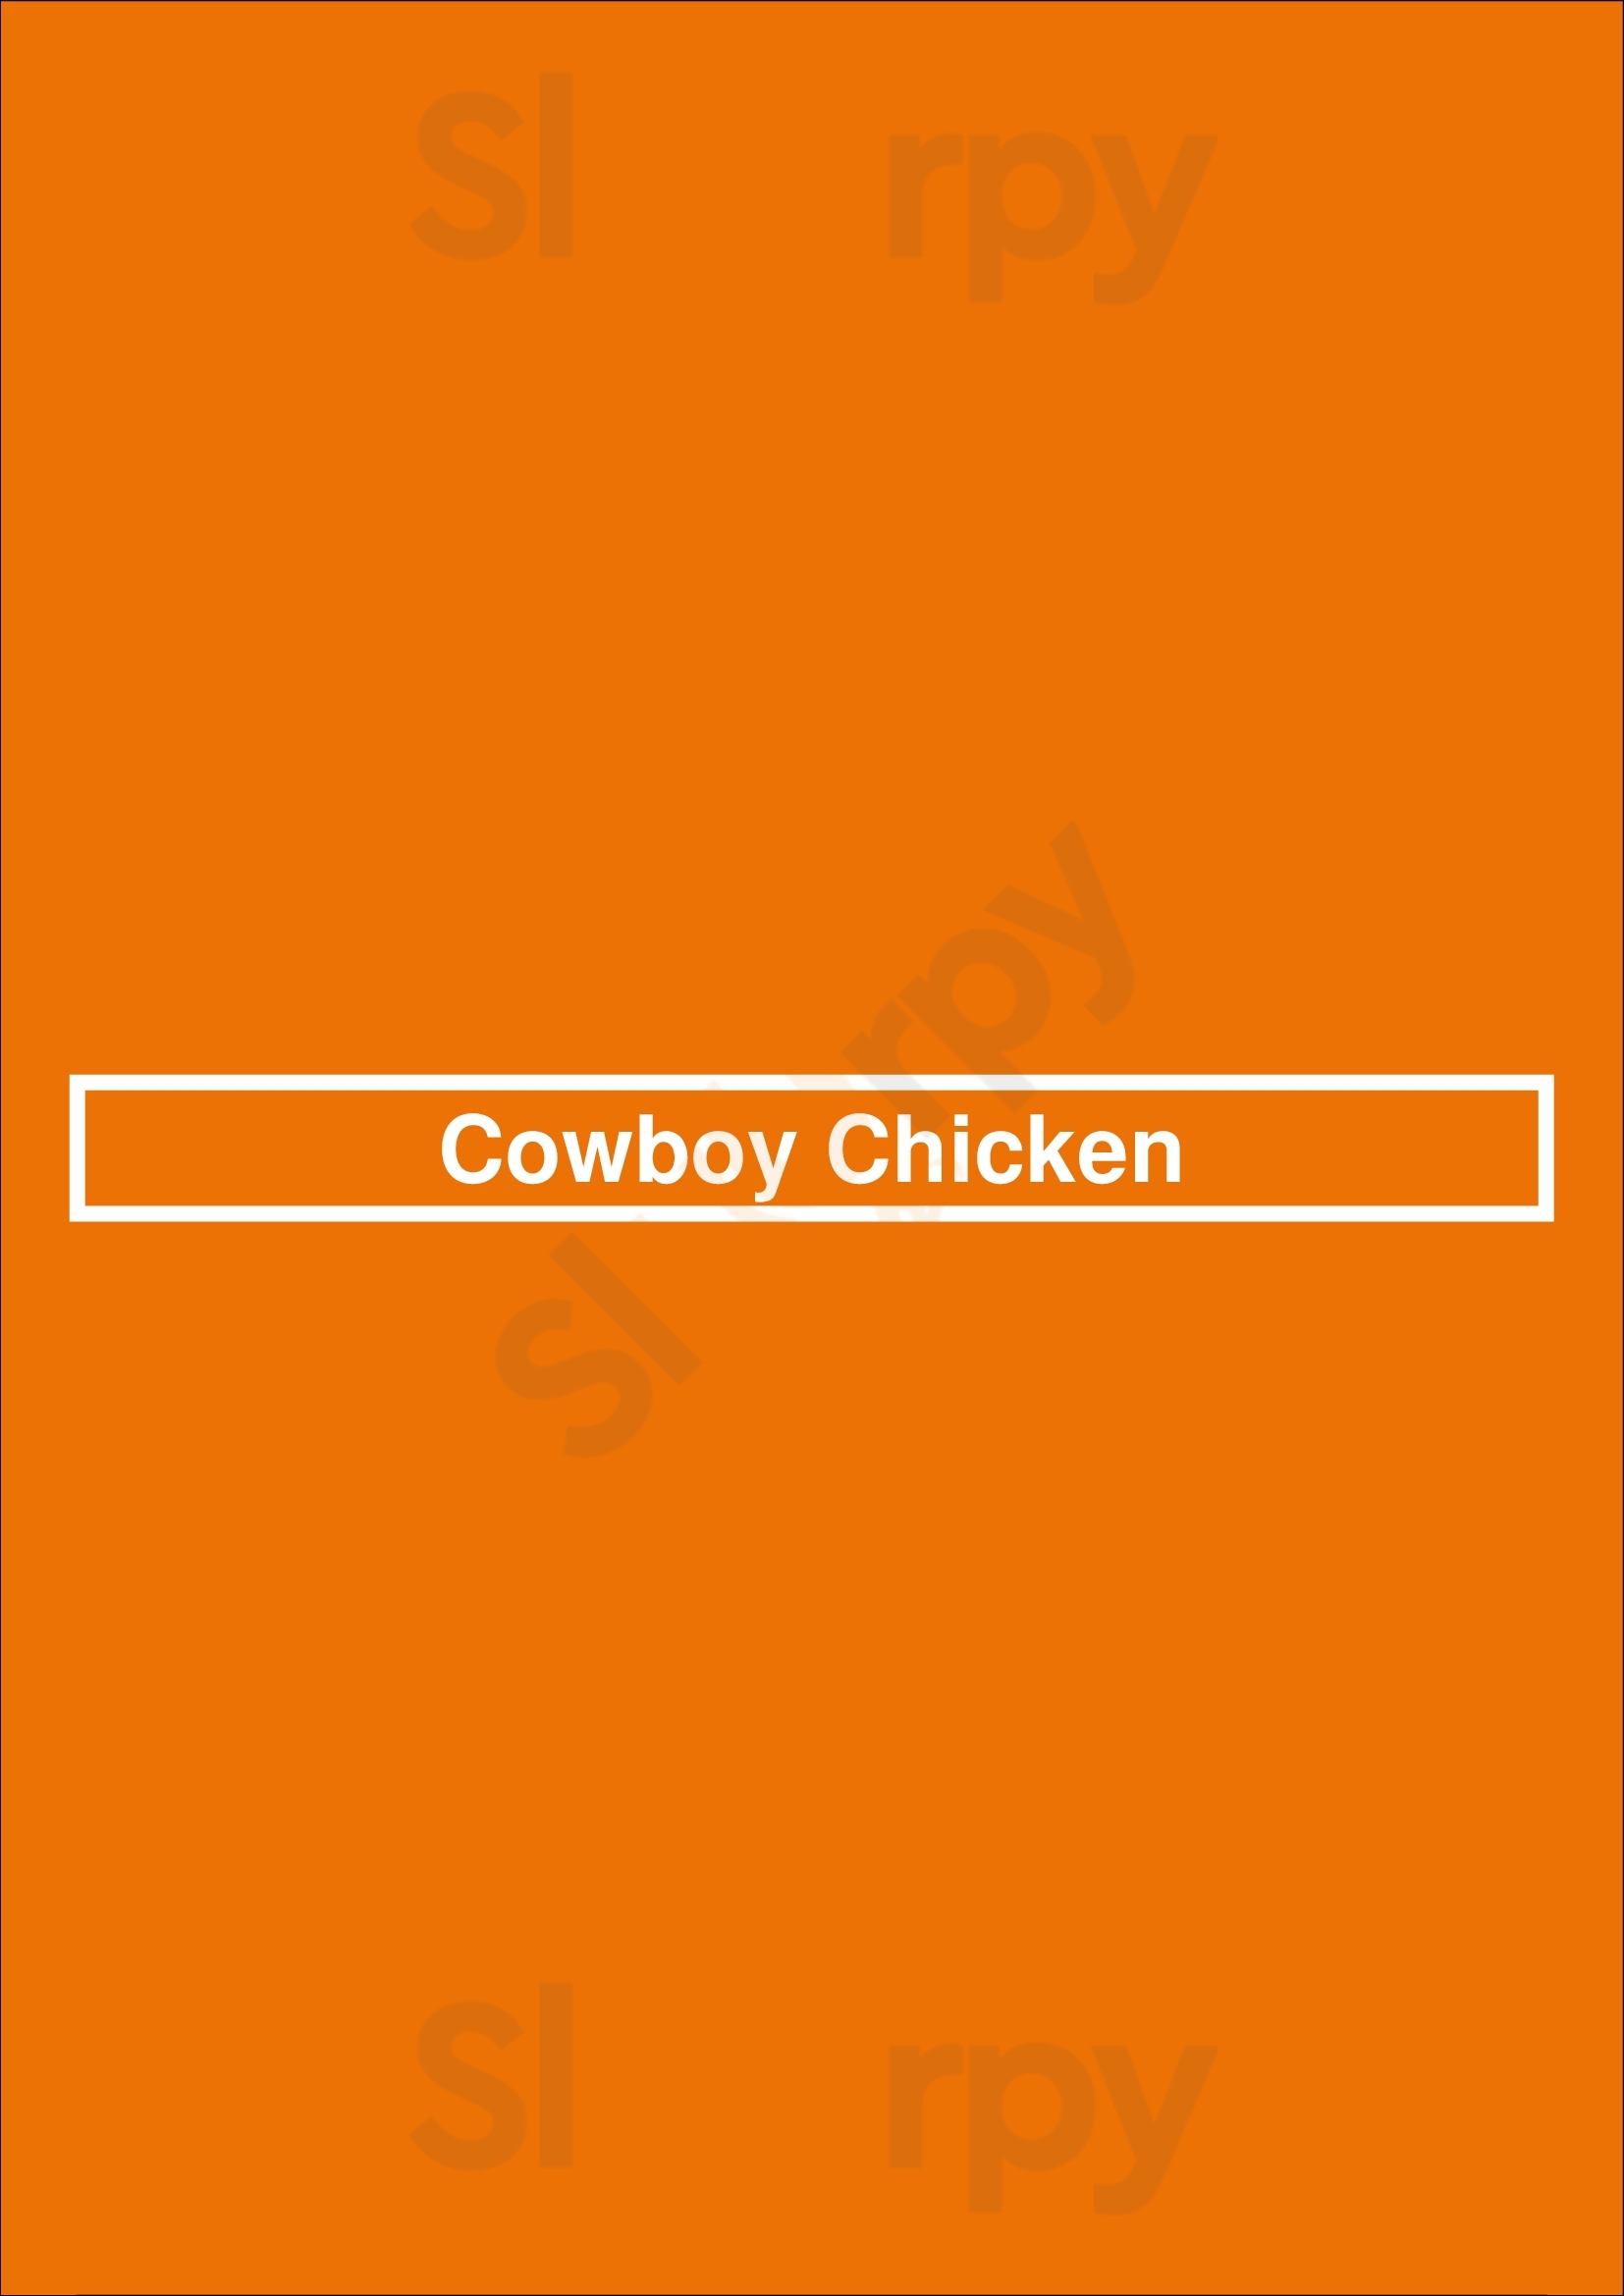 Cowboy Chicken Oklahoma City Menu - 1